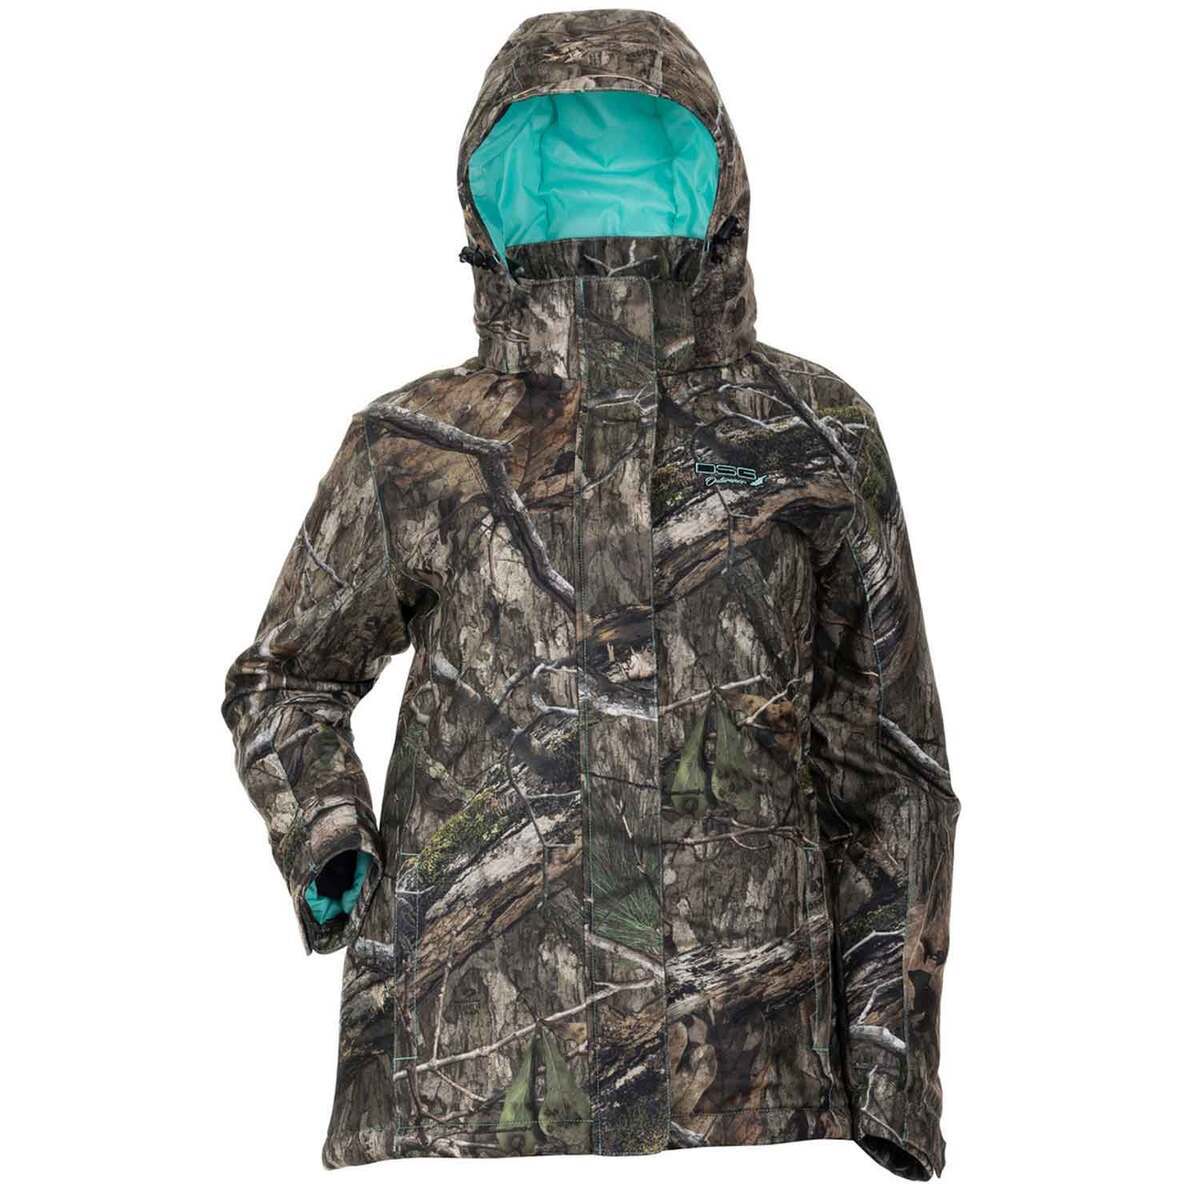 https://www.sportsmans.com/medias/dsg-outerwear-womens-mossy-oak-country-dna-addie-waterproof-hunting-jacket-xs-1852100-1.jpg?context=bWFzdGVyfGltYWdlc3wxMjA2ODd8aW1hZ2UvanBlZ3xoOWUvaGY4LzExNjQ0NTU4MTgwMzgyLzEyMDAtY29udmVyc2lvbkZvcm1hdF9iYXNlLWNvbnZlcnNpb25Gb3JtYXRfc213LTE4NTIxMDAtMS5qcGd8NzJiYzNkM2Y5ODY0ZTIzOGNhZDJkZGJiMDA5NGVkZDUzNzI3ZjQ1MDNlYTVlM2EzM2M2YTdiYzMwNmY3Y2JhMw